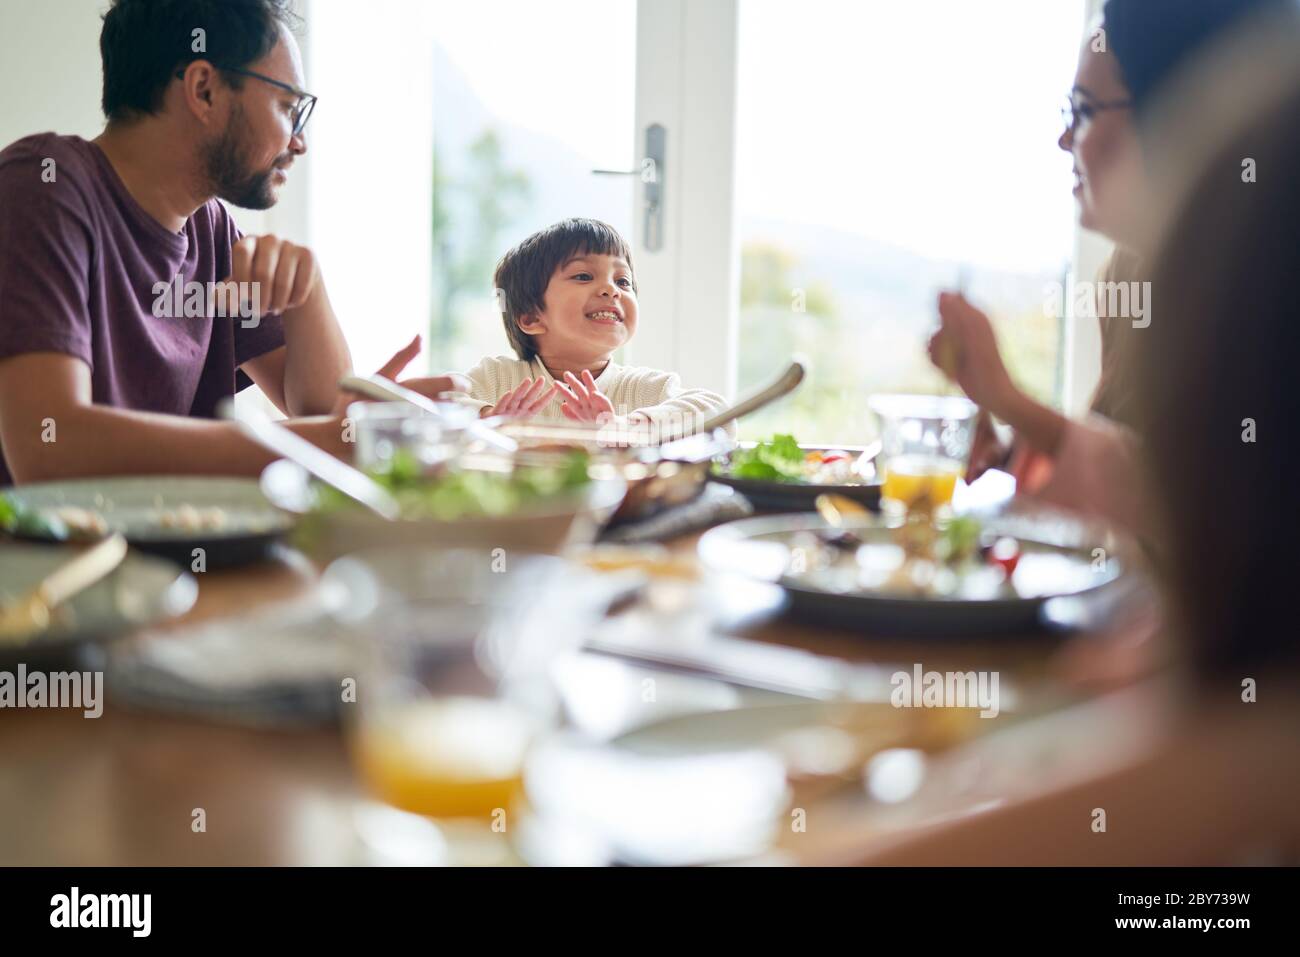 Glückliche Familie, die am Esstisch zu Mittag gegessen hat Stockfoto